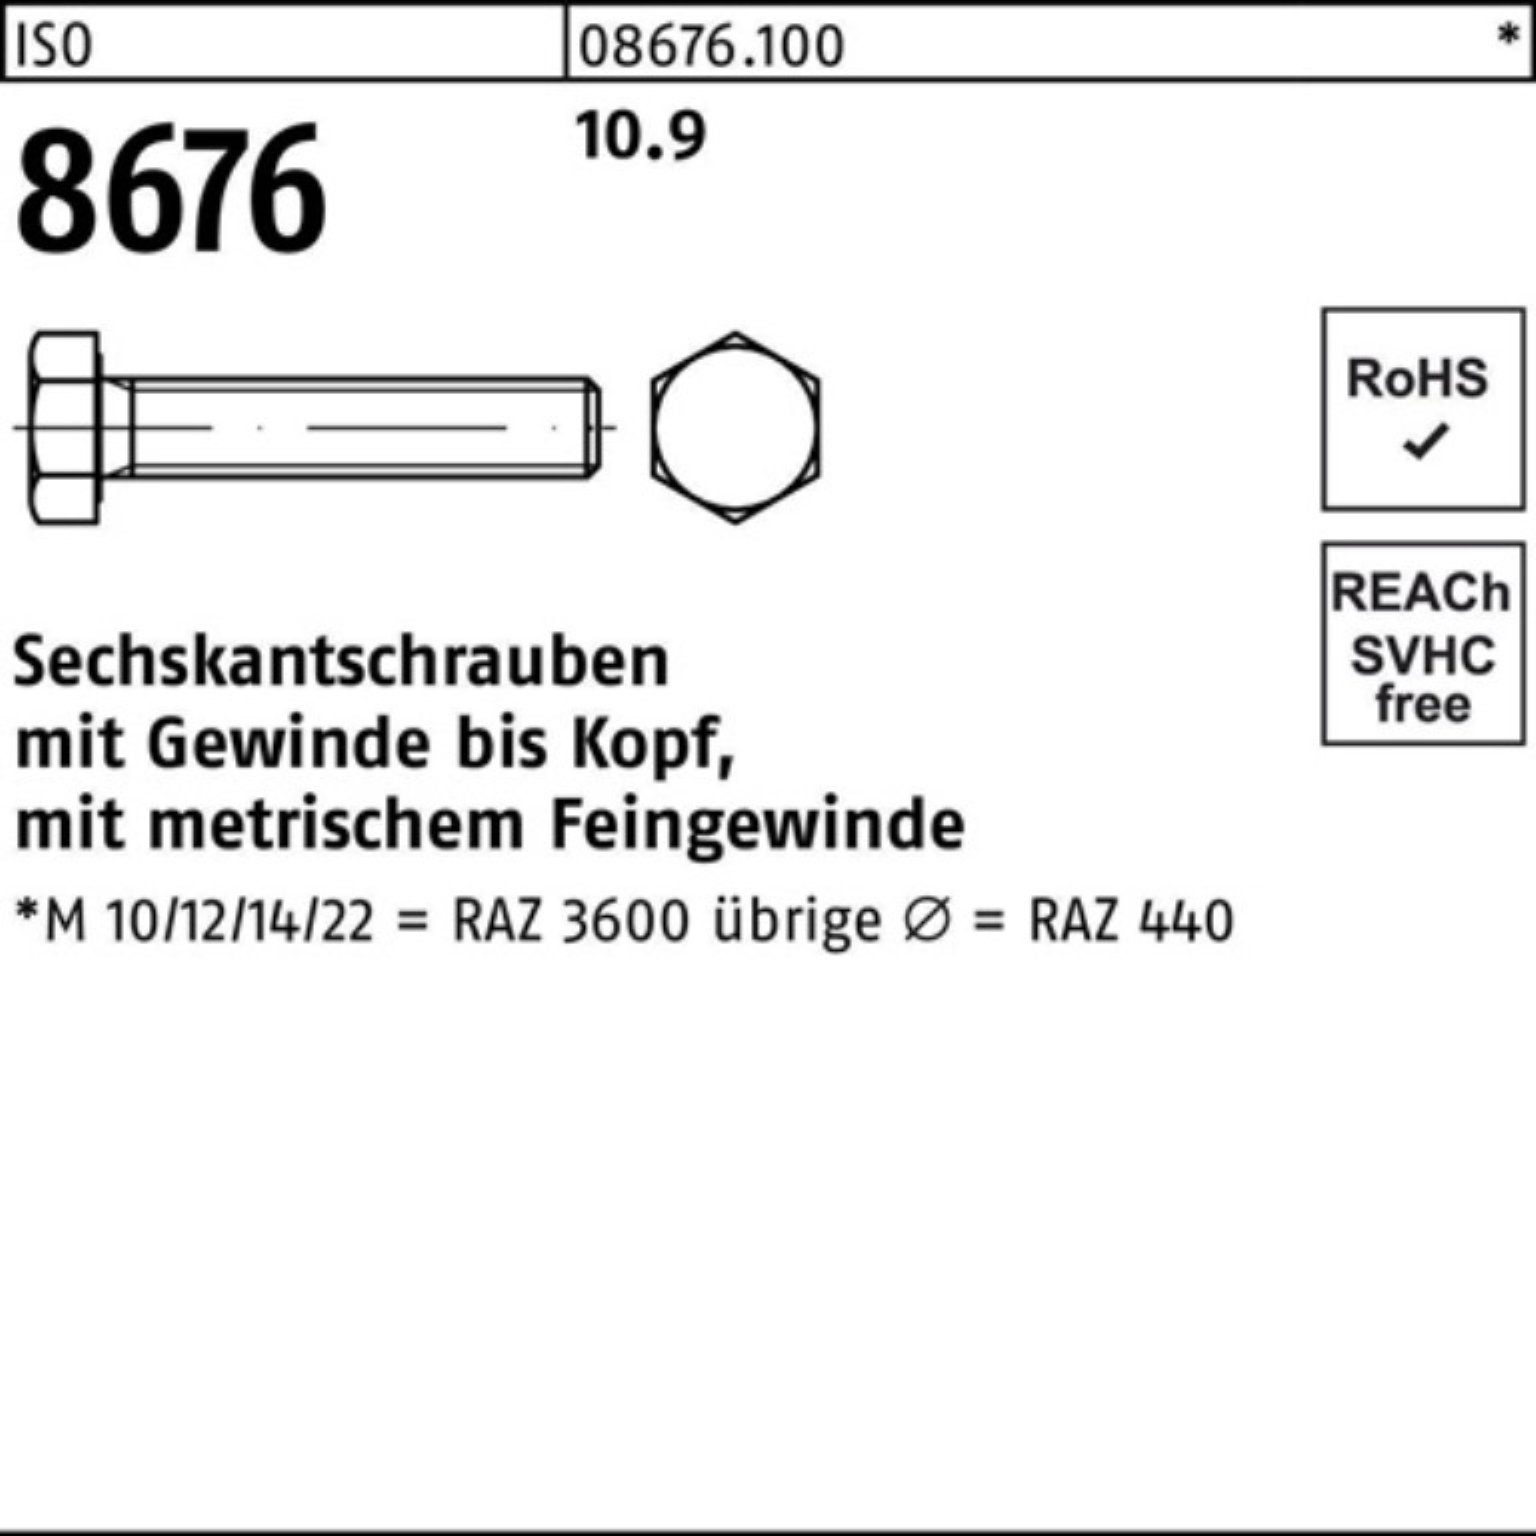 25 Pack VG 10.9 Sechskantschraube 100er Reyher Stück 50 M20x1,5x 8676 ISO IS Sechskantschraube